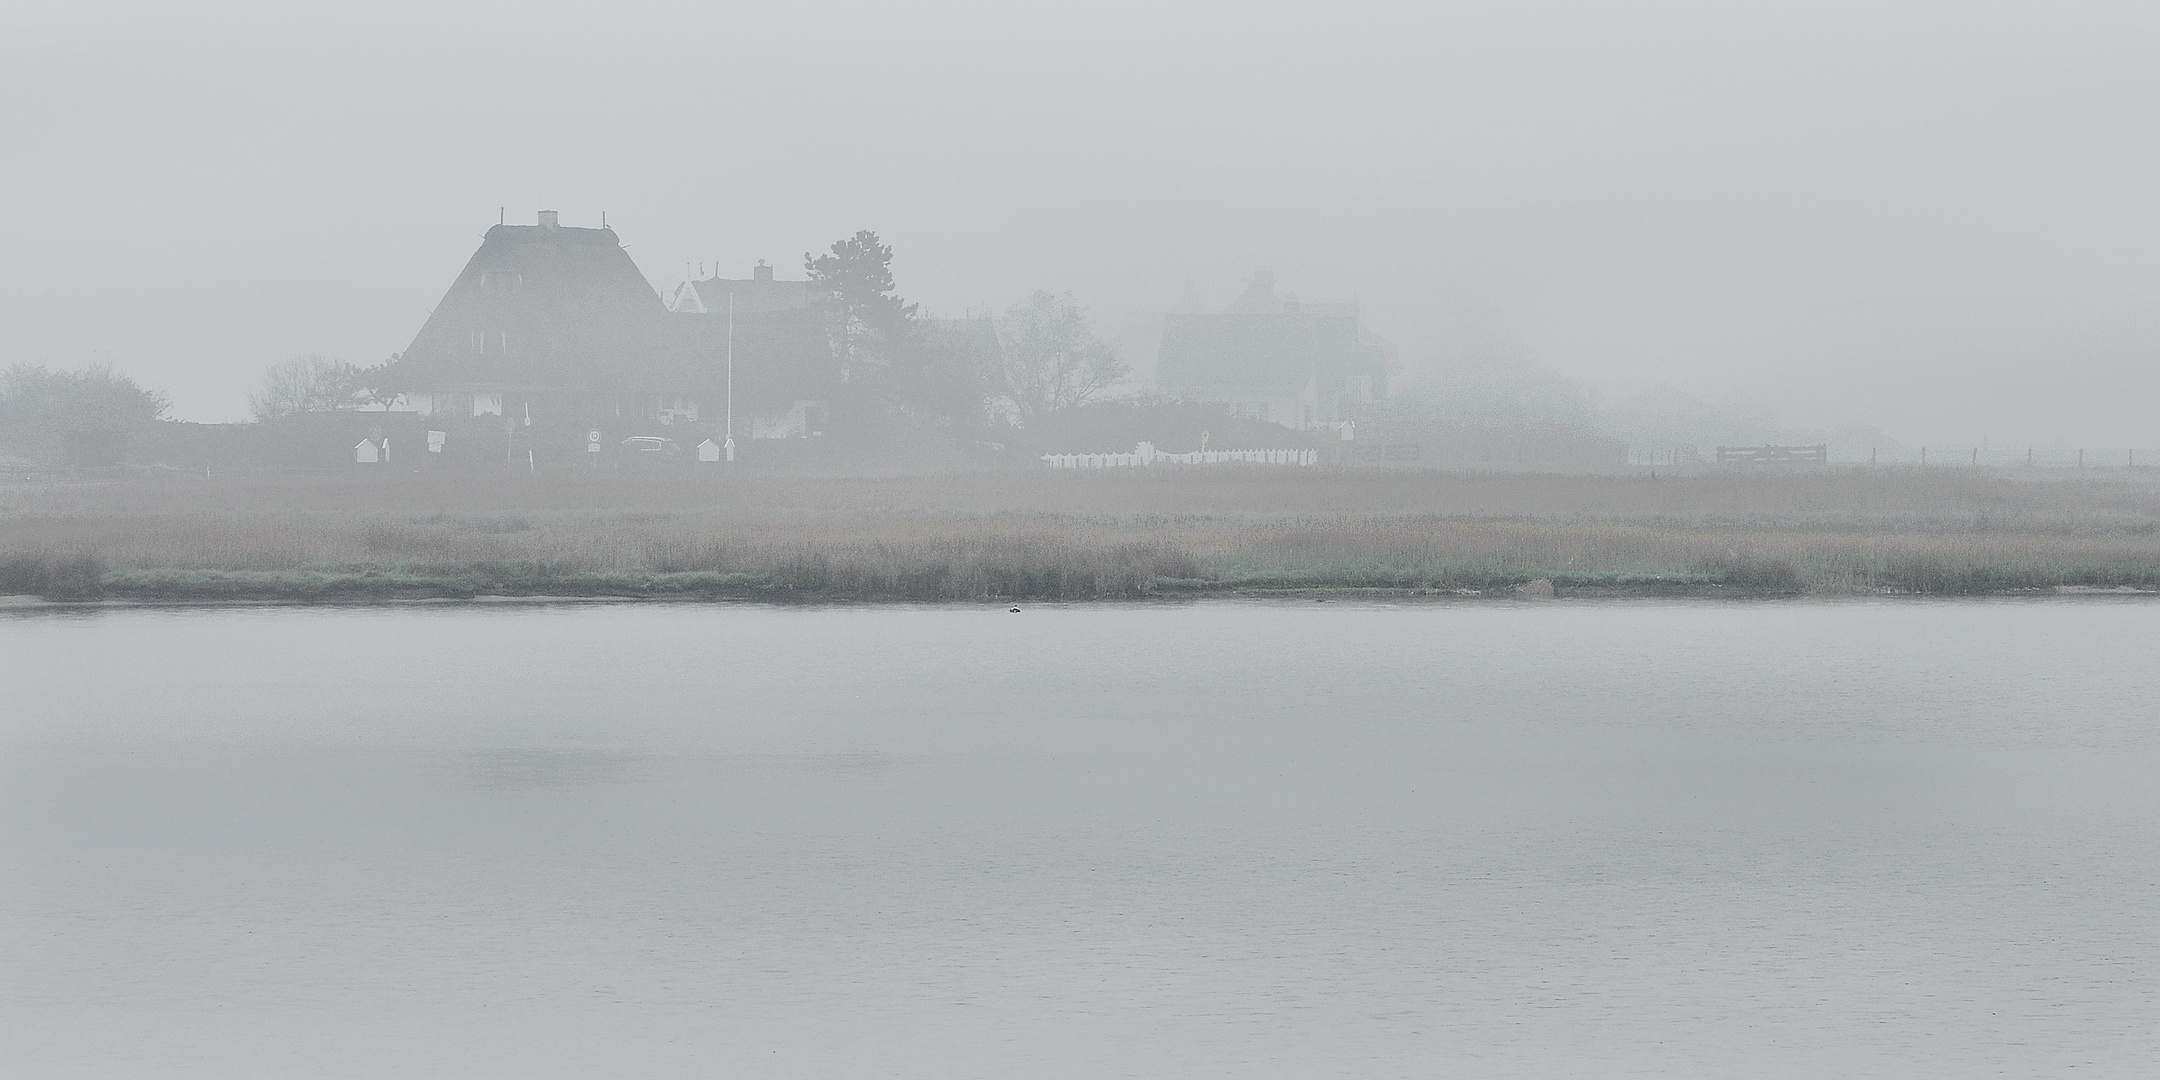  Graswarder (Heiligenhafen) im Nebel